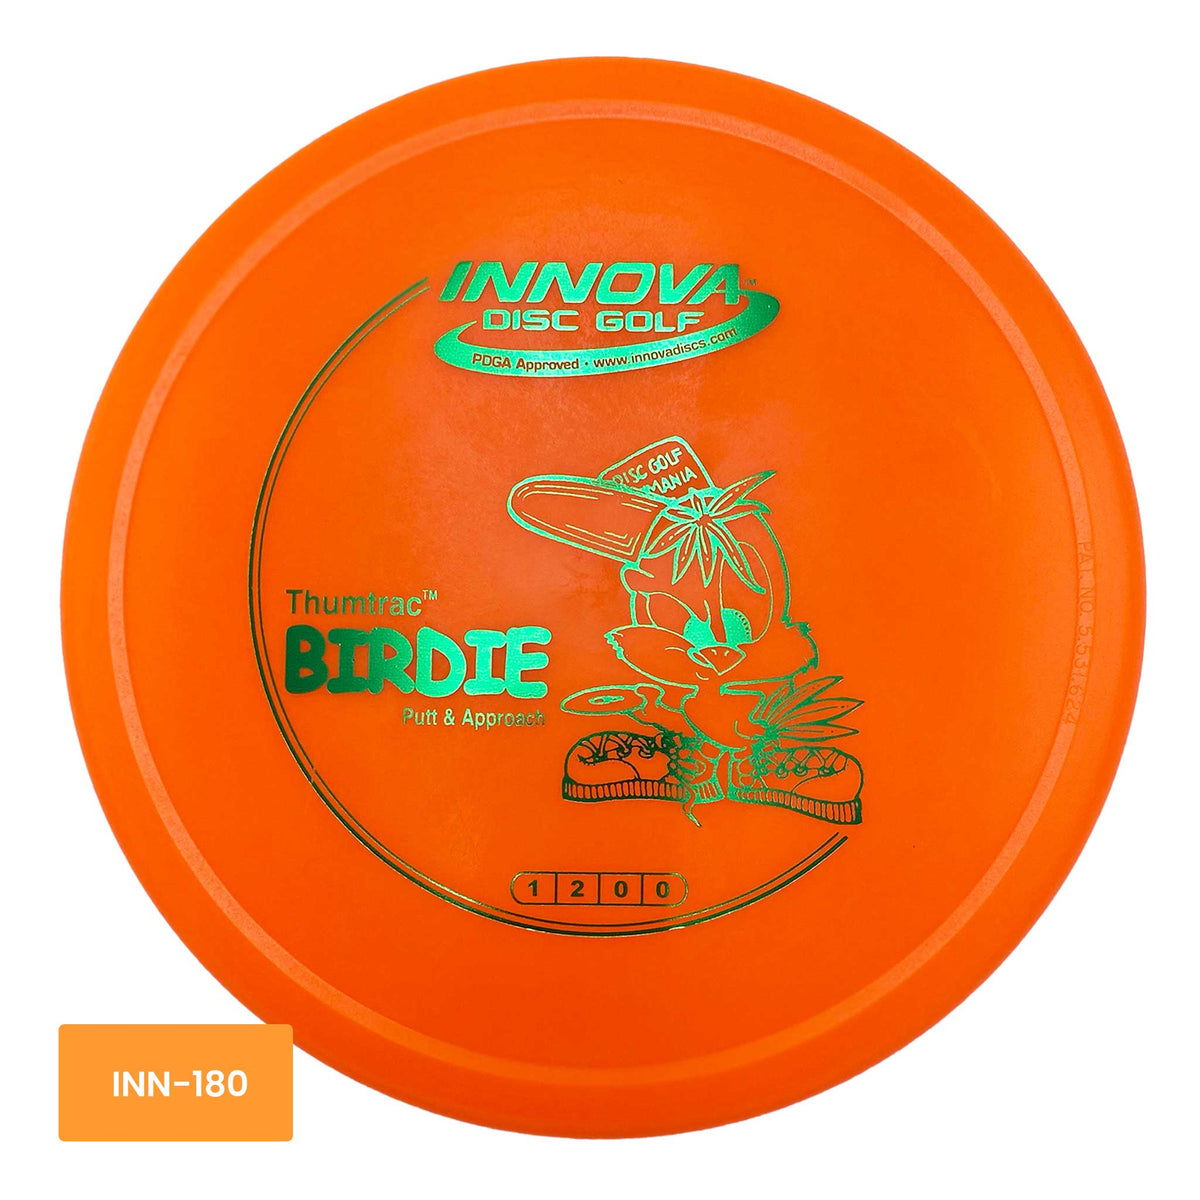 Innova Disc Golf DX Birdie putter and approach - Orange / Green